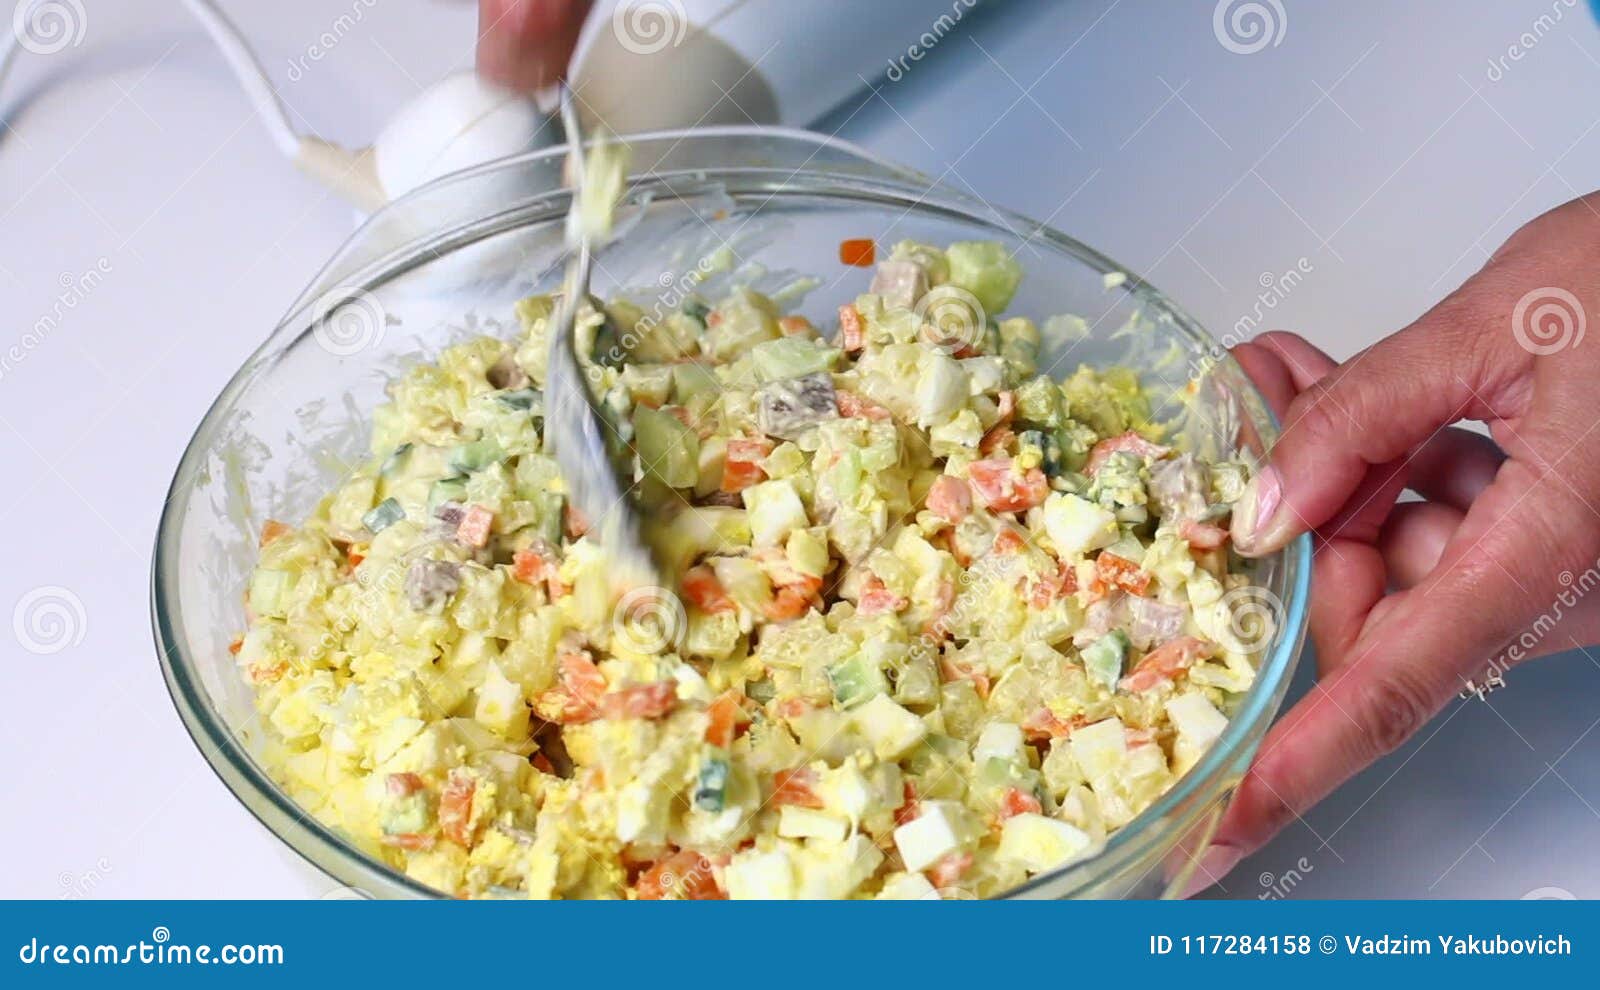 https://thumbs.dreamstime.com/z/ensalada-rusa-de-la-carne-con-las-verduras-y-mayonesa-una-mujer-mezcla-los-ingredientes-para-117284158.jpg